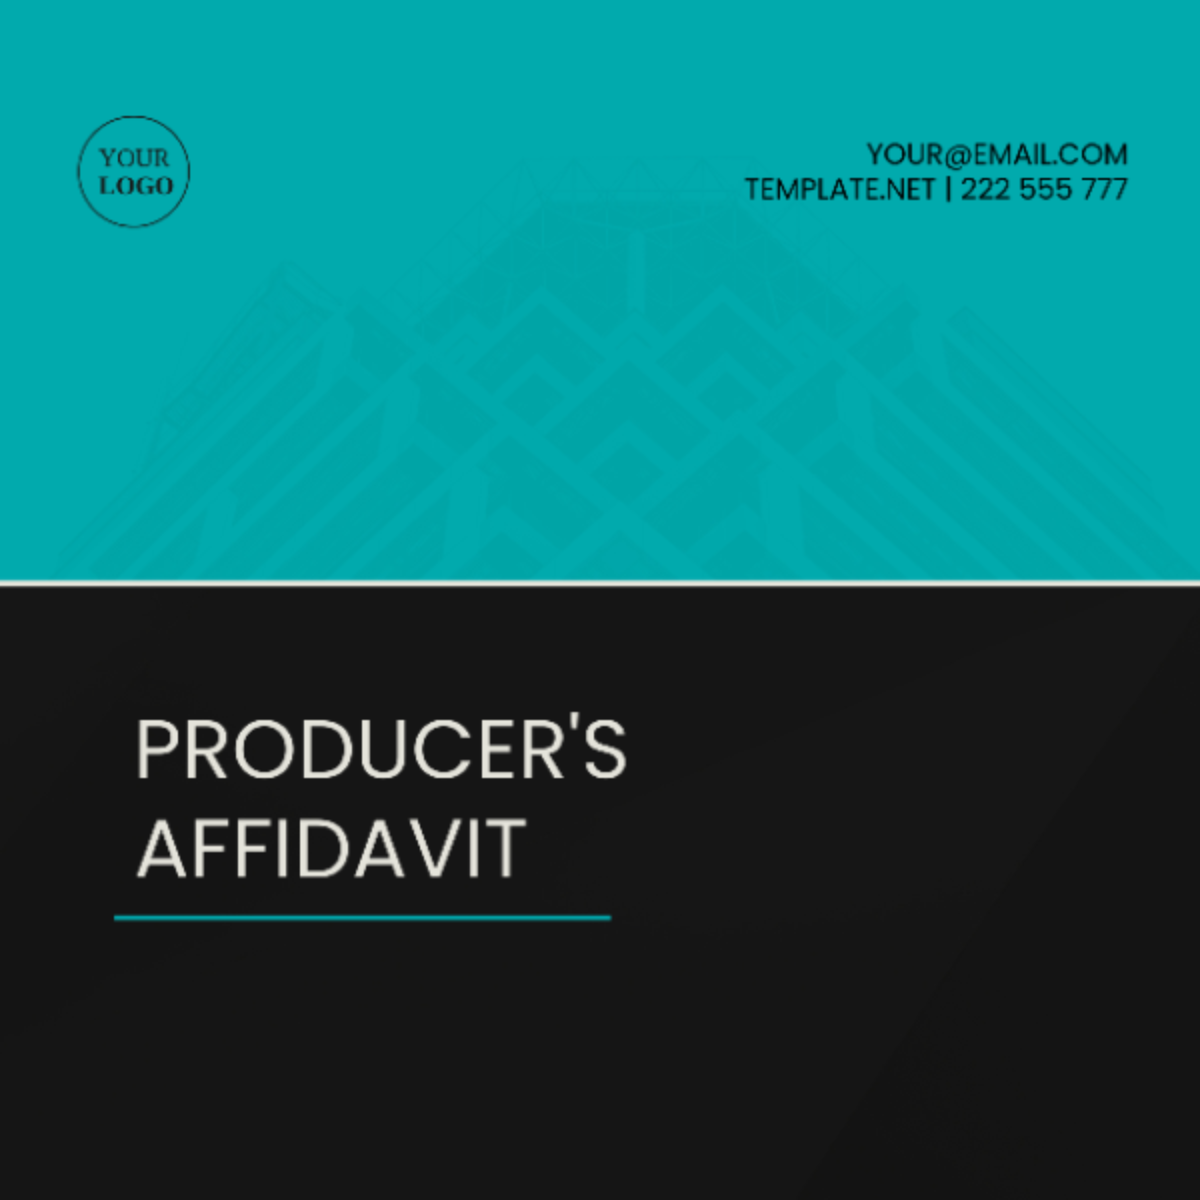 Producer's Affidavit Template